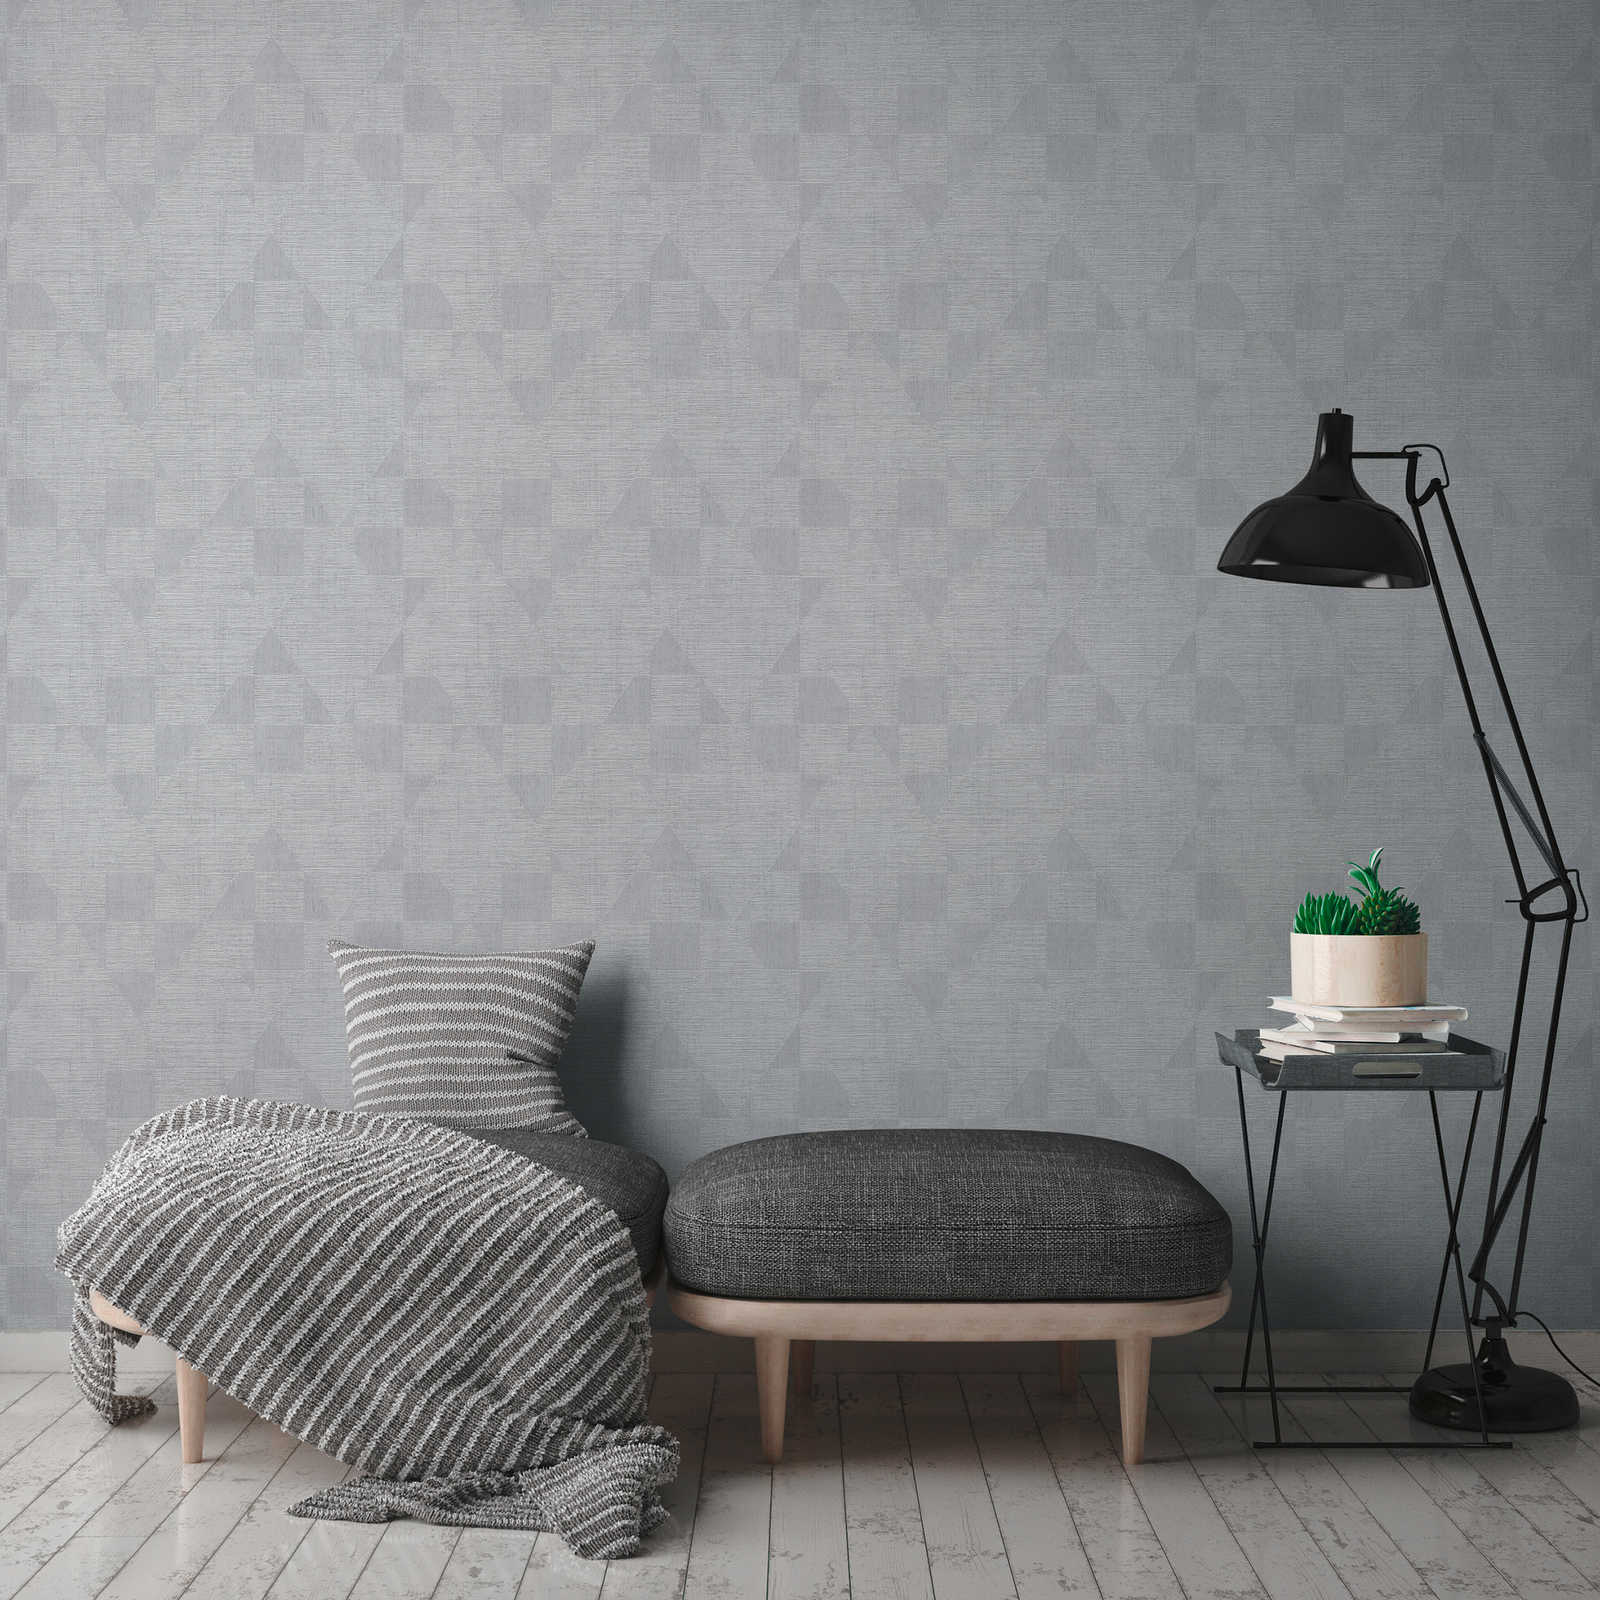             Melange wallpaper with retro pattern & metallic sheen - grey
        